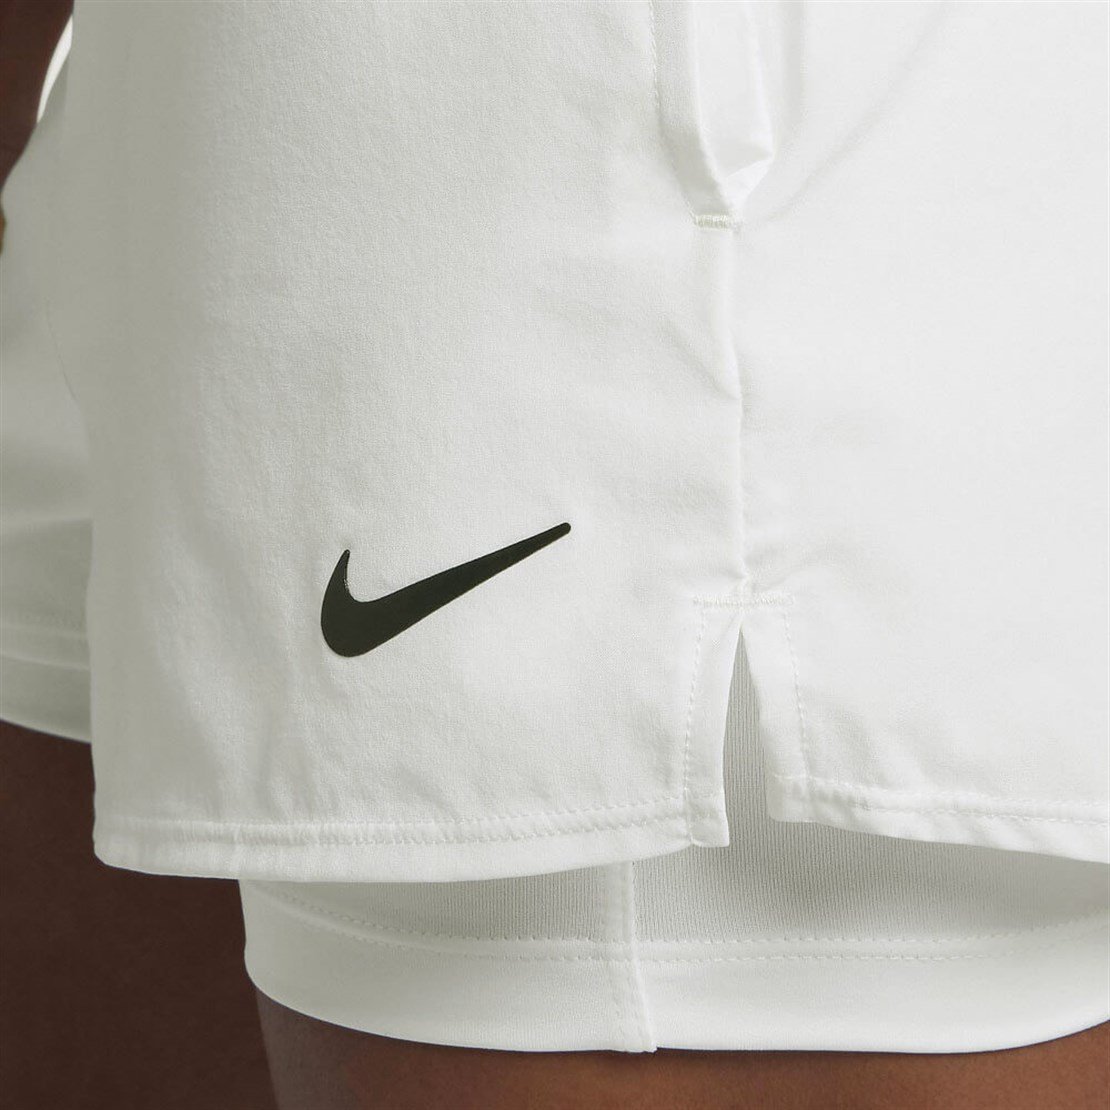 Nike Court Flex Kadın Tenis Şortu